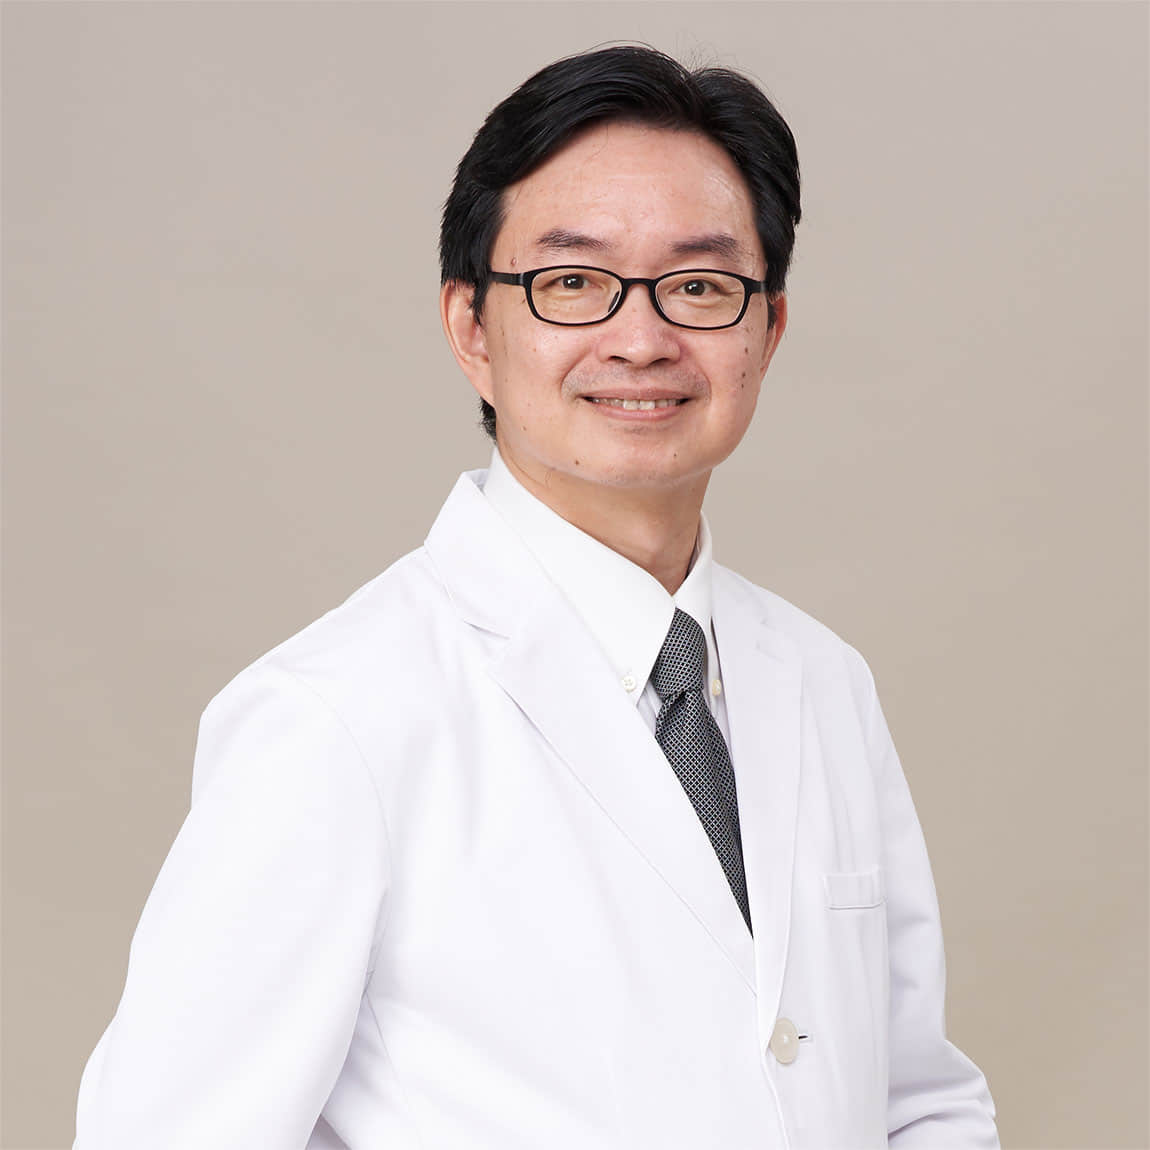 何彦秉  Dr. ホー  Jason Yen-Ping Ho, MD.